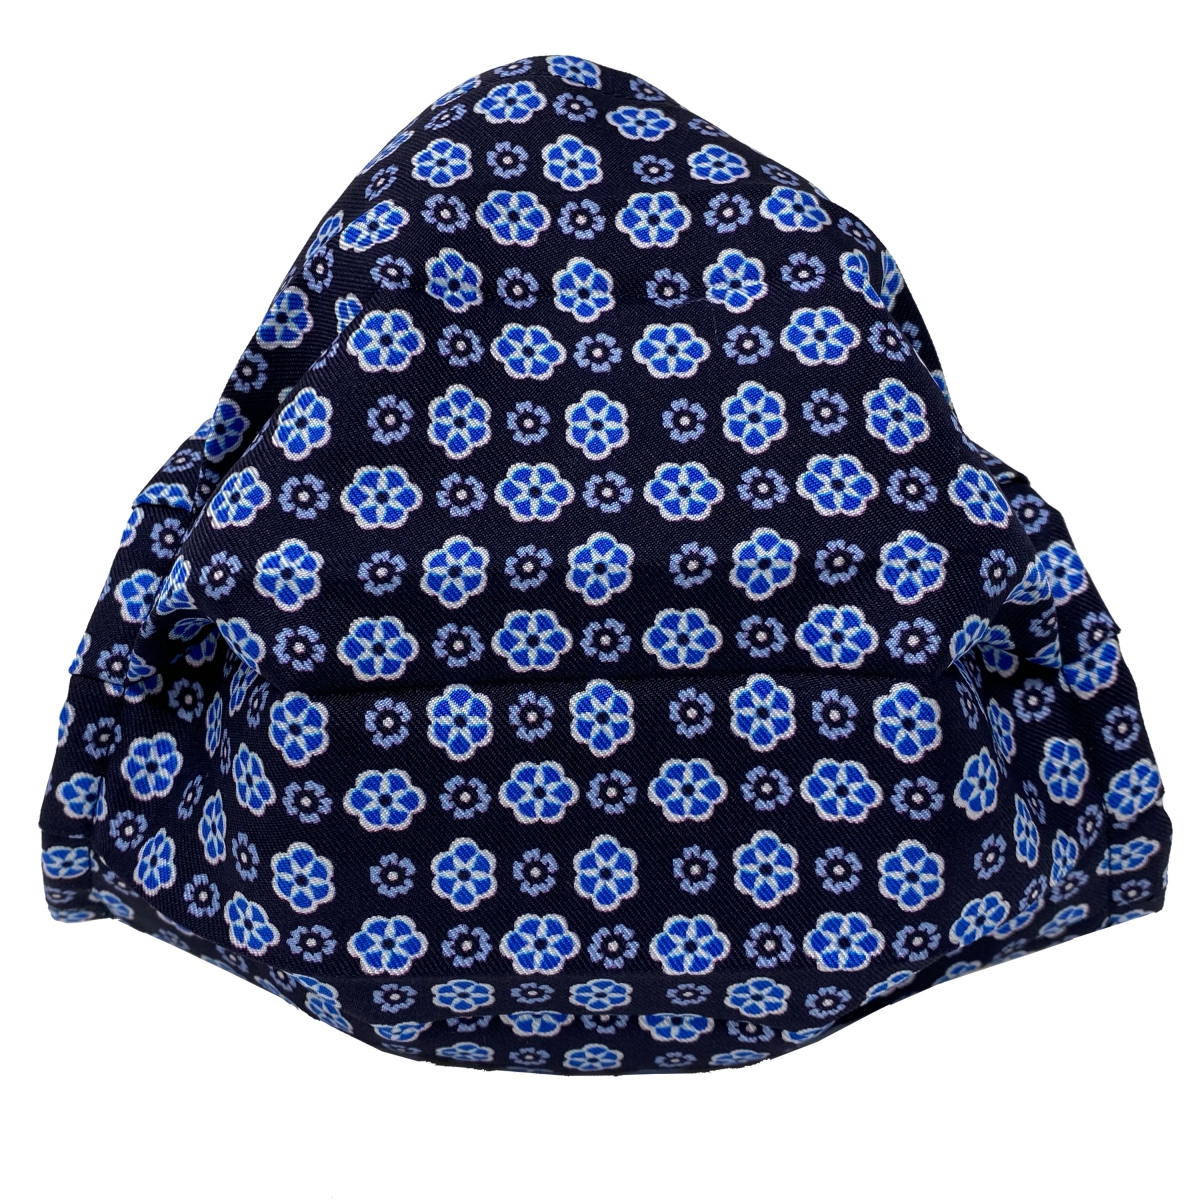 StyleMask Mascherina facciale filtrante blu con fiori in seta